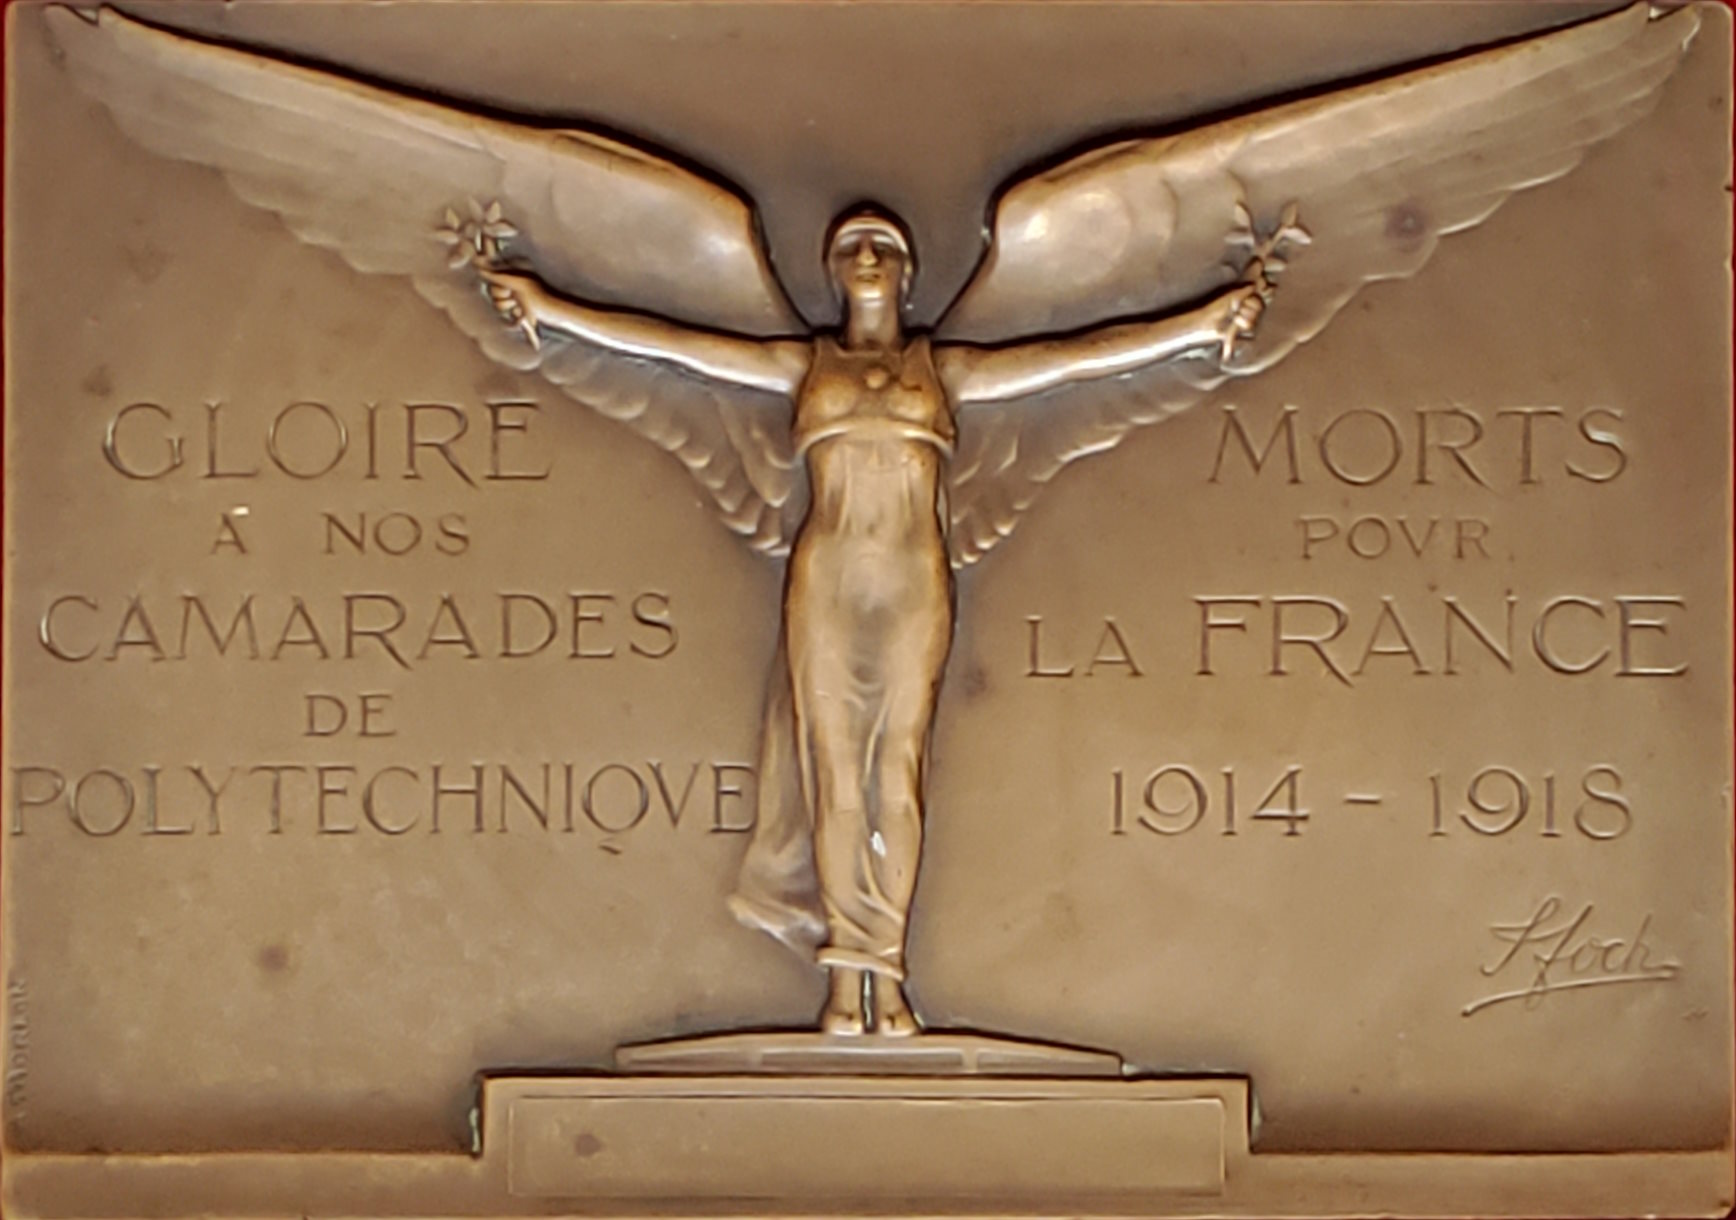 La plaquette “Aux morts de Polytechnique” d’Alexandre Morlon